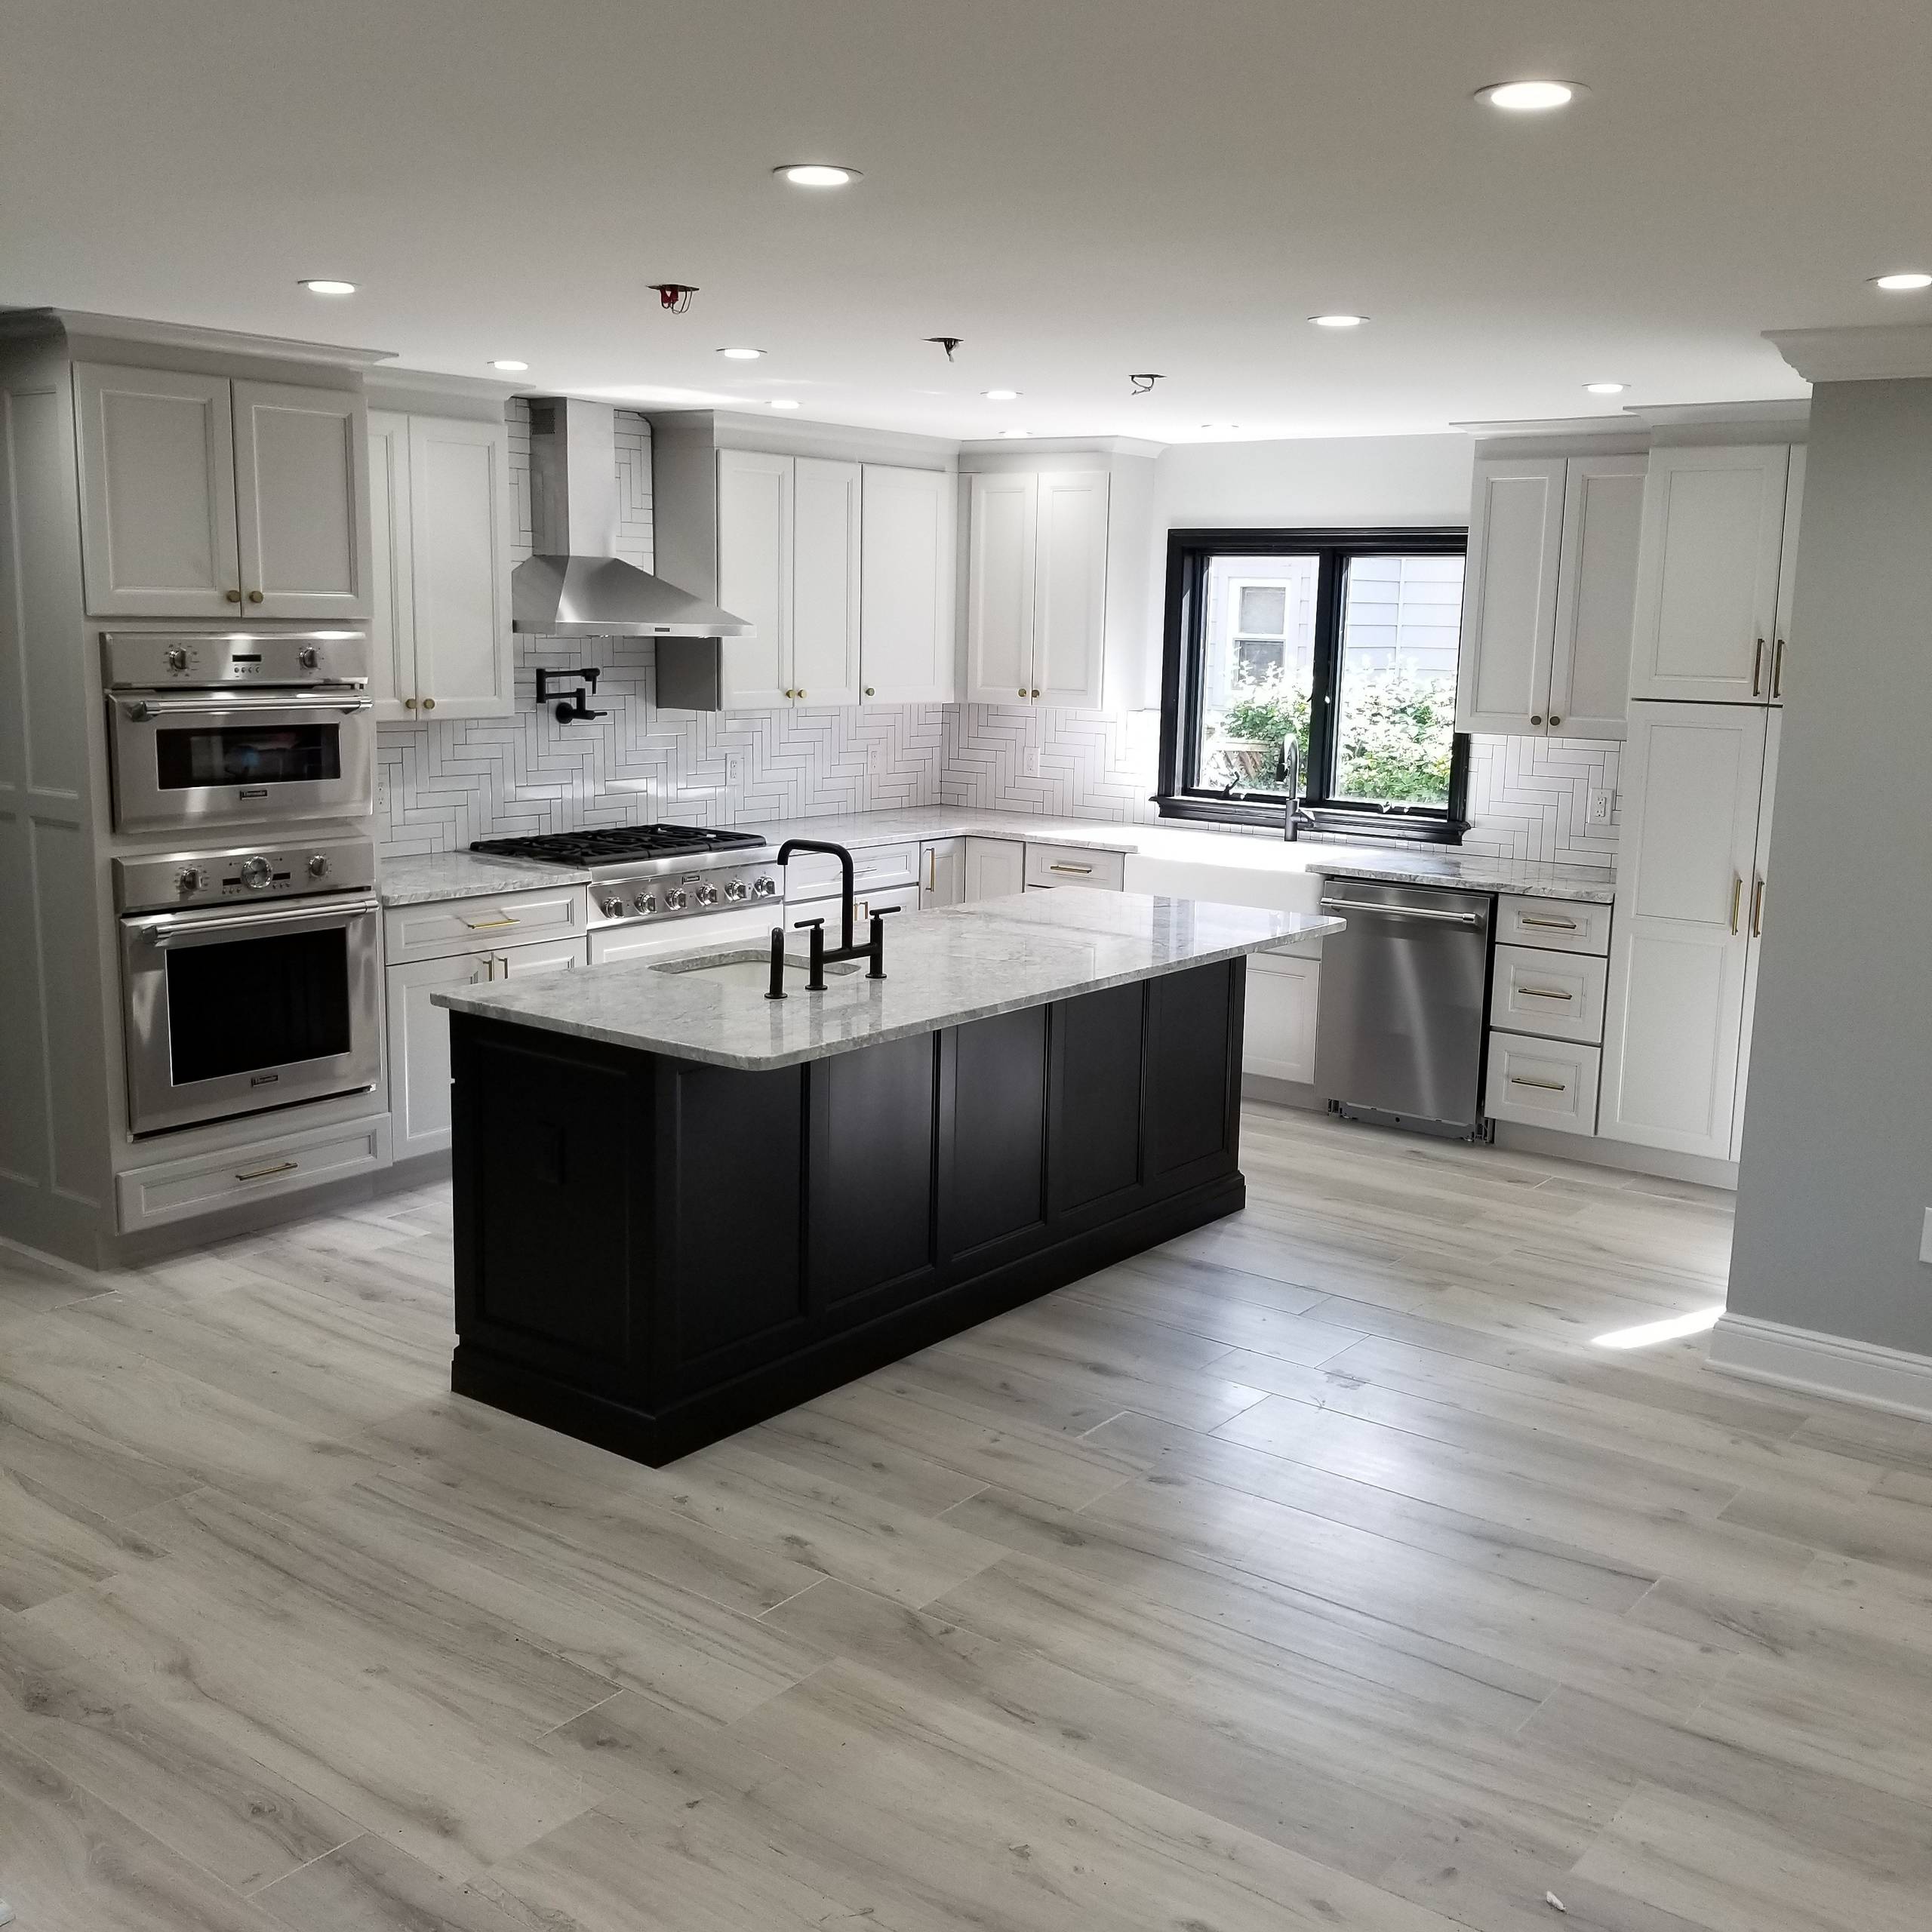 Grey Kitchen With Laminate Floors Ideas, Light Grey Laminate Flooring In Kitchen